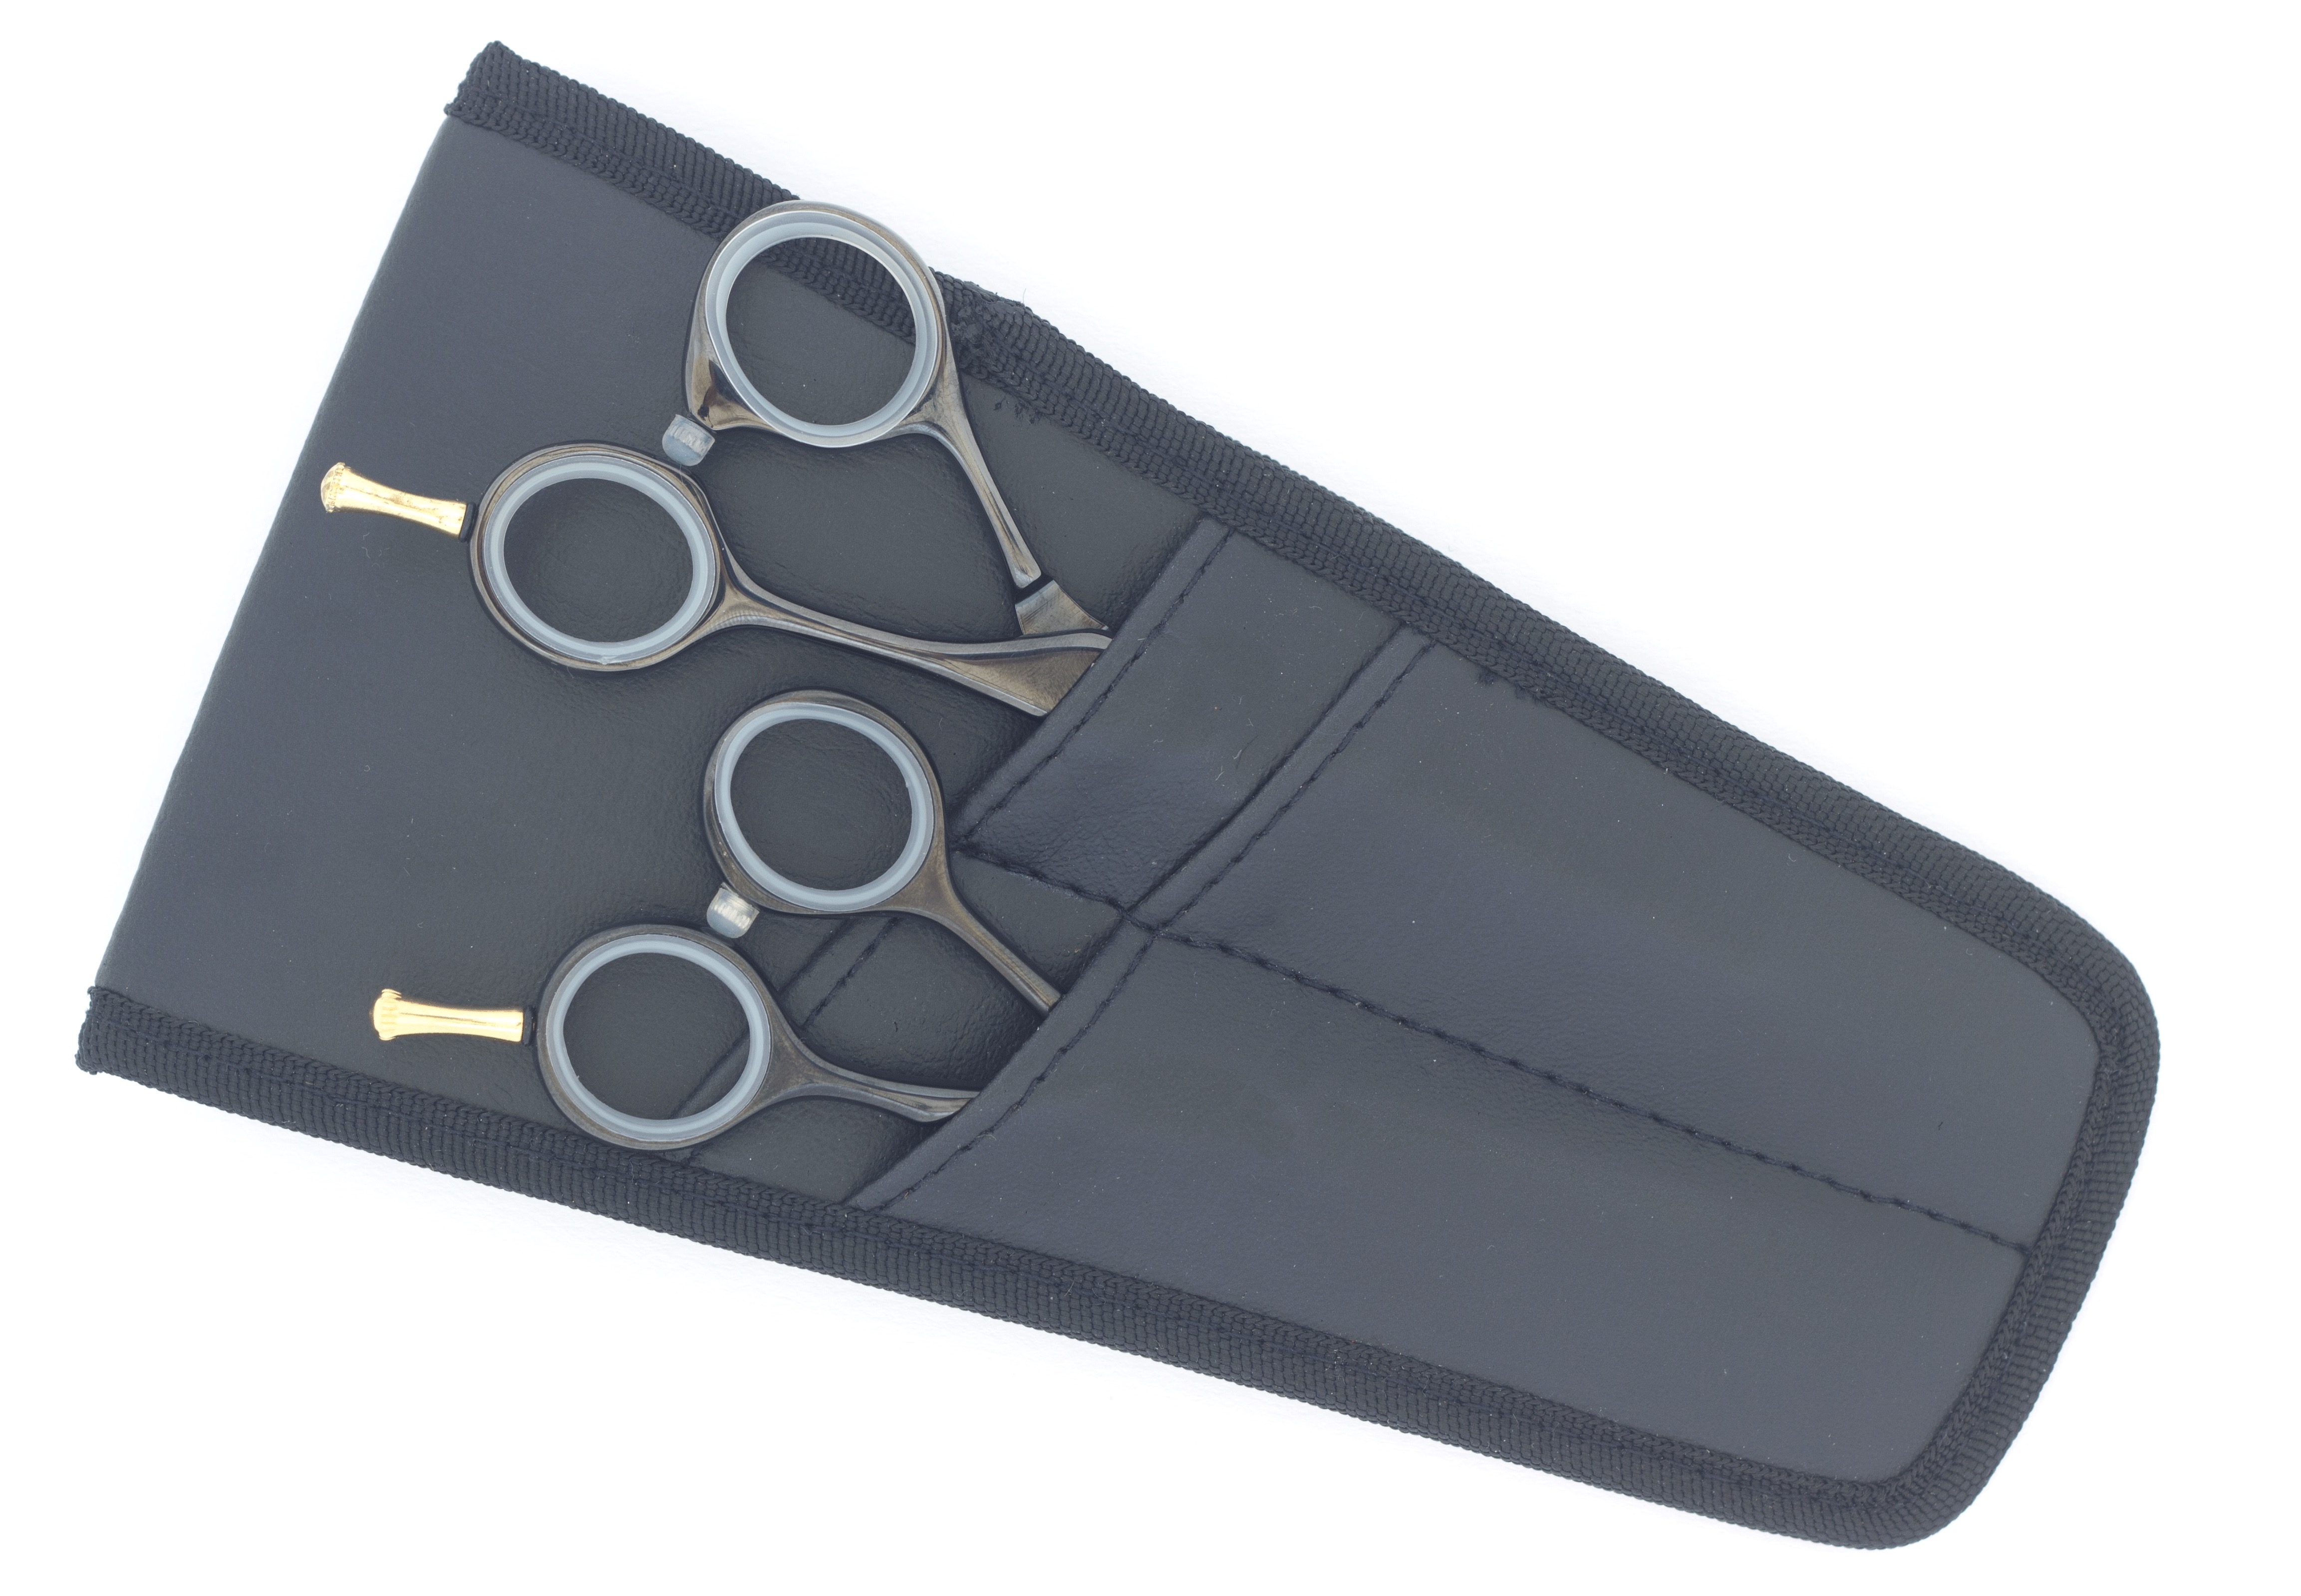 Excellent leatherette scissors case, 2 compartments